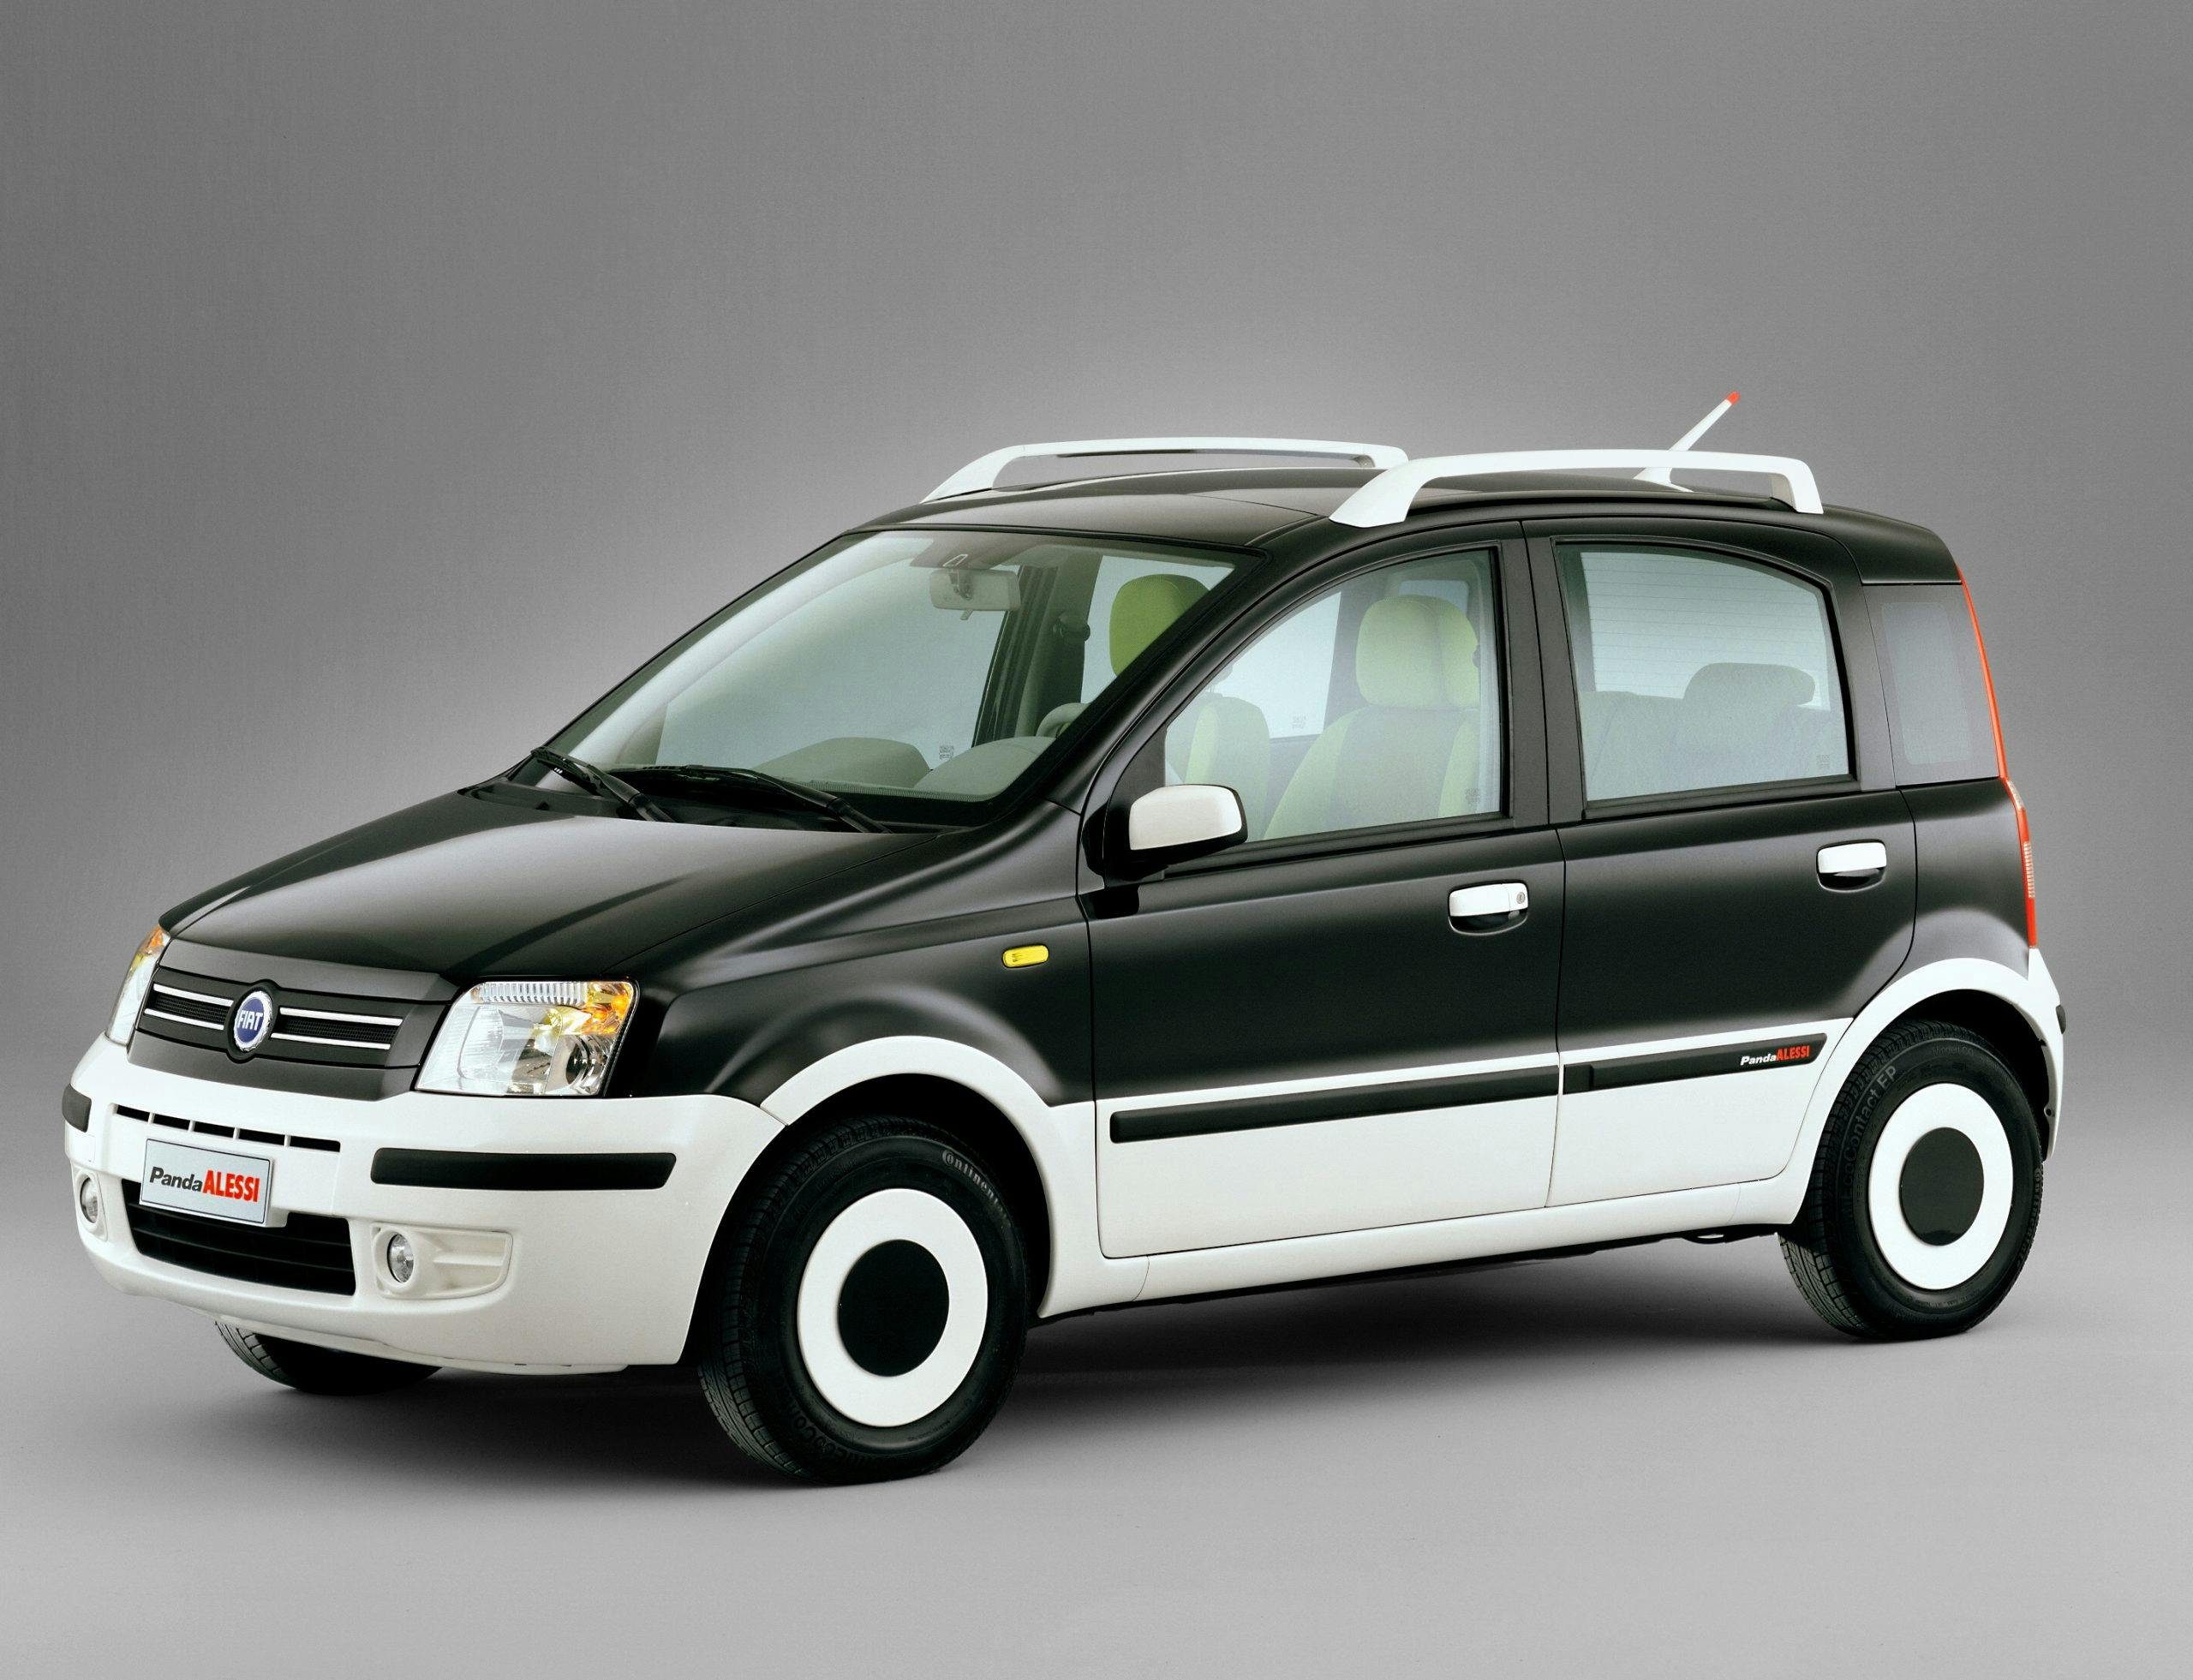 Fiat PandaAlessi-2006